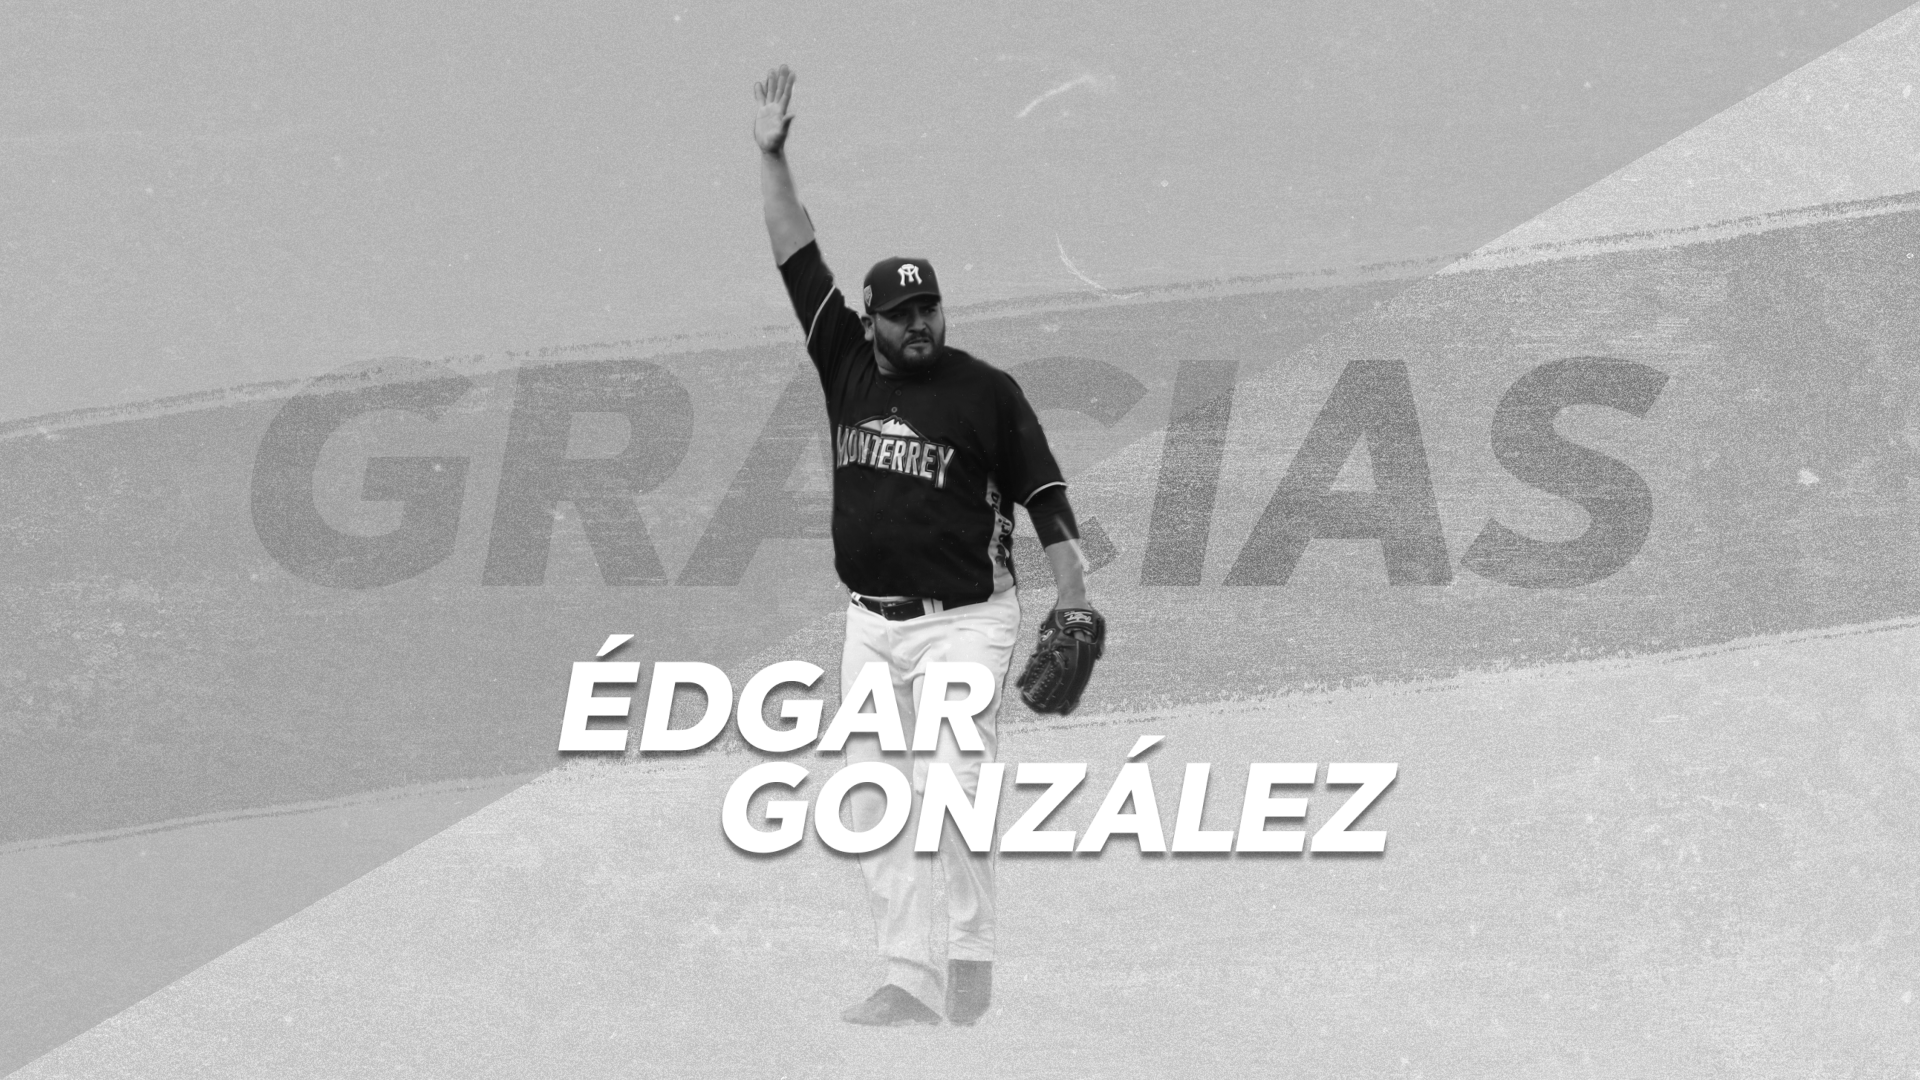 ¡Gracias Edgar!